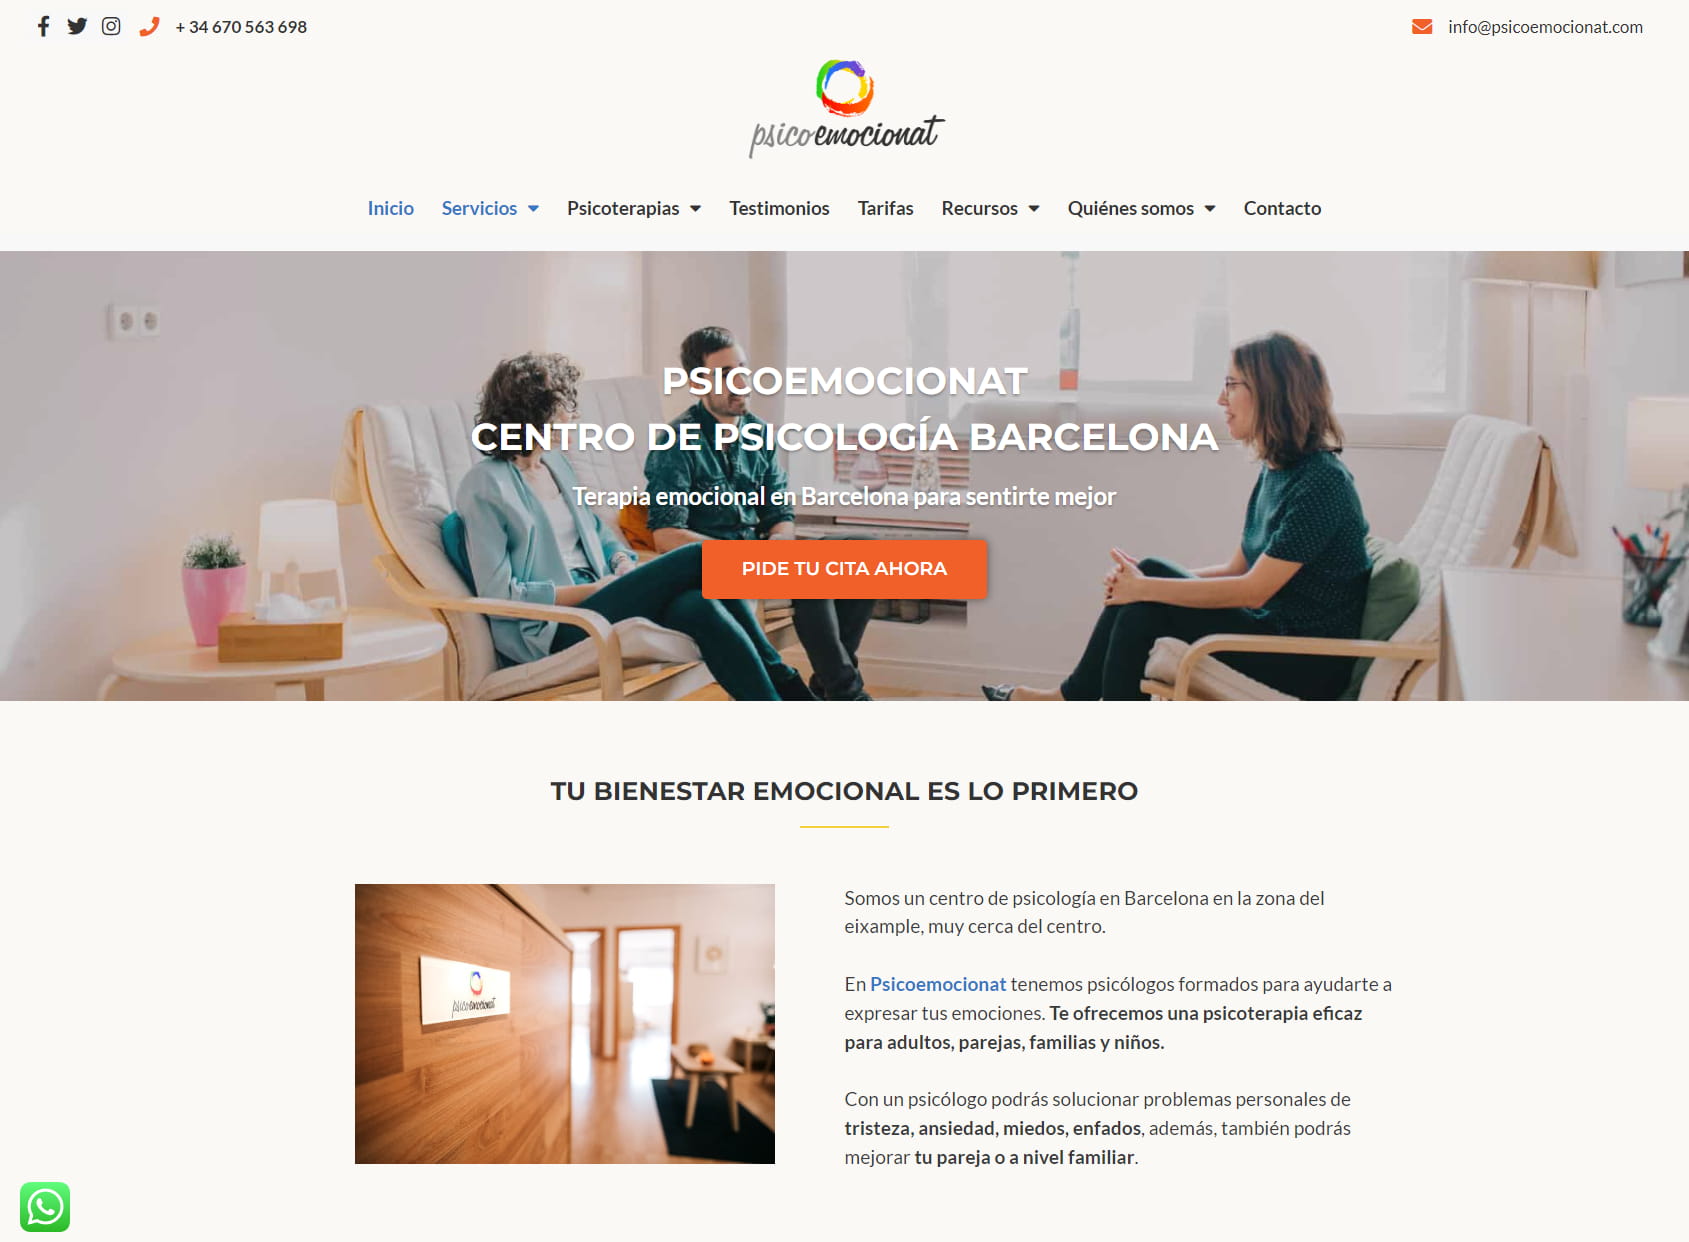 Psicoemocionat - Centro de psicología emocional Barcelona - Terapia individual,pareja,familiar.